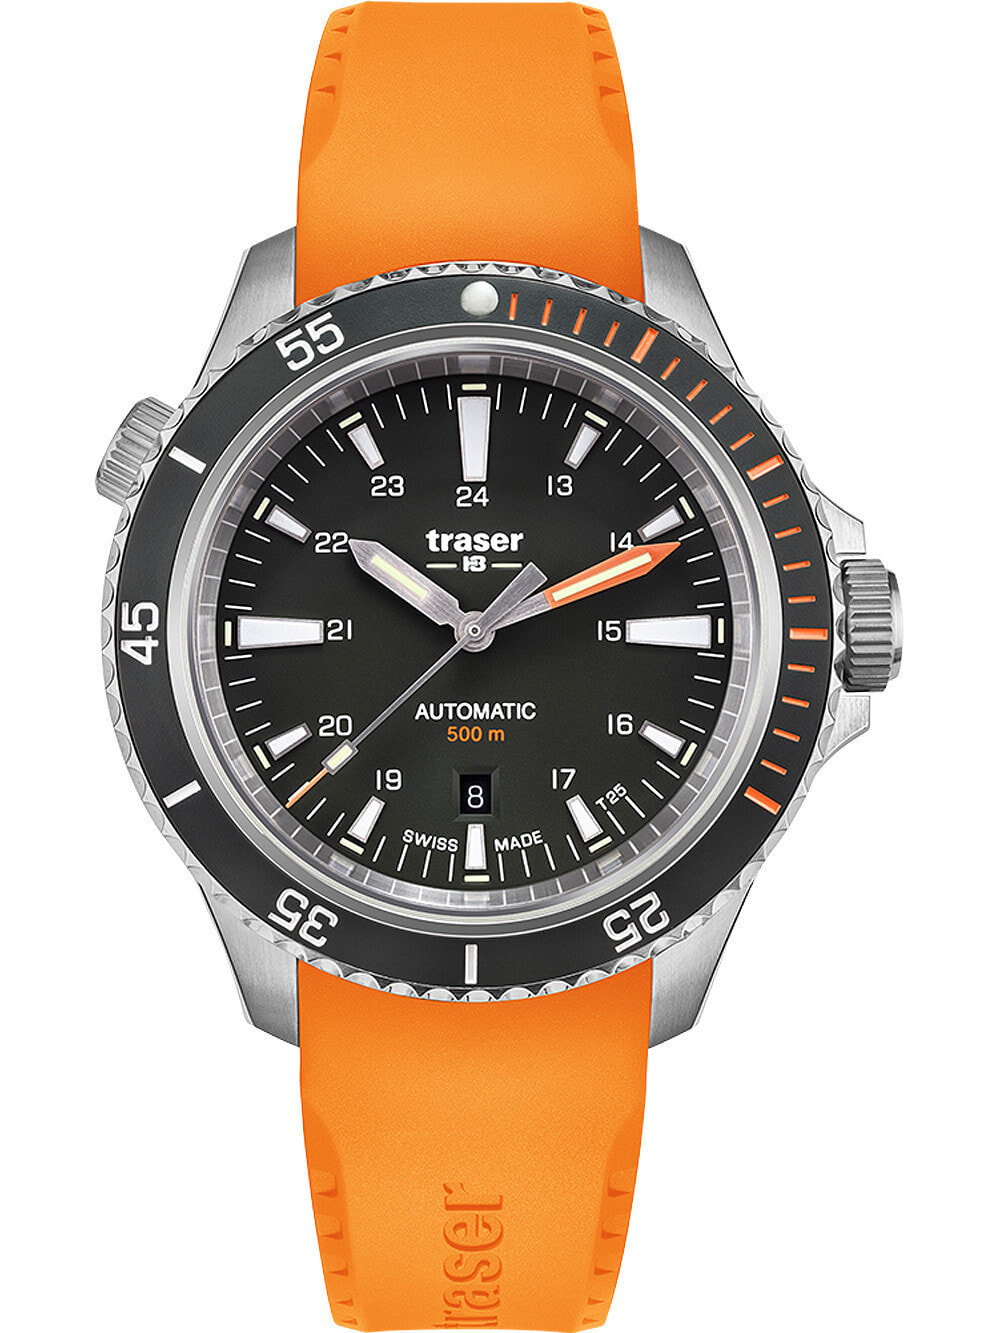 Мужские наручные часы с оранжевым силиконовым ремешком Traser H3 110323 P67 Diver Automatik Black 46mm 50ATM